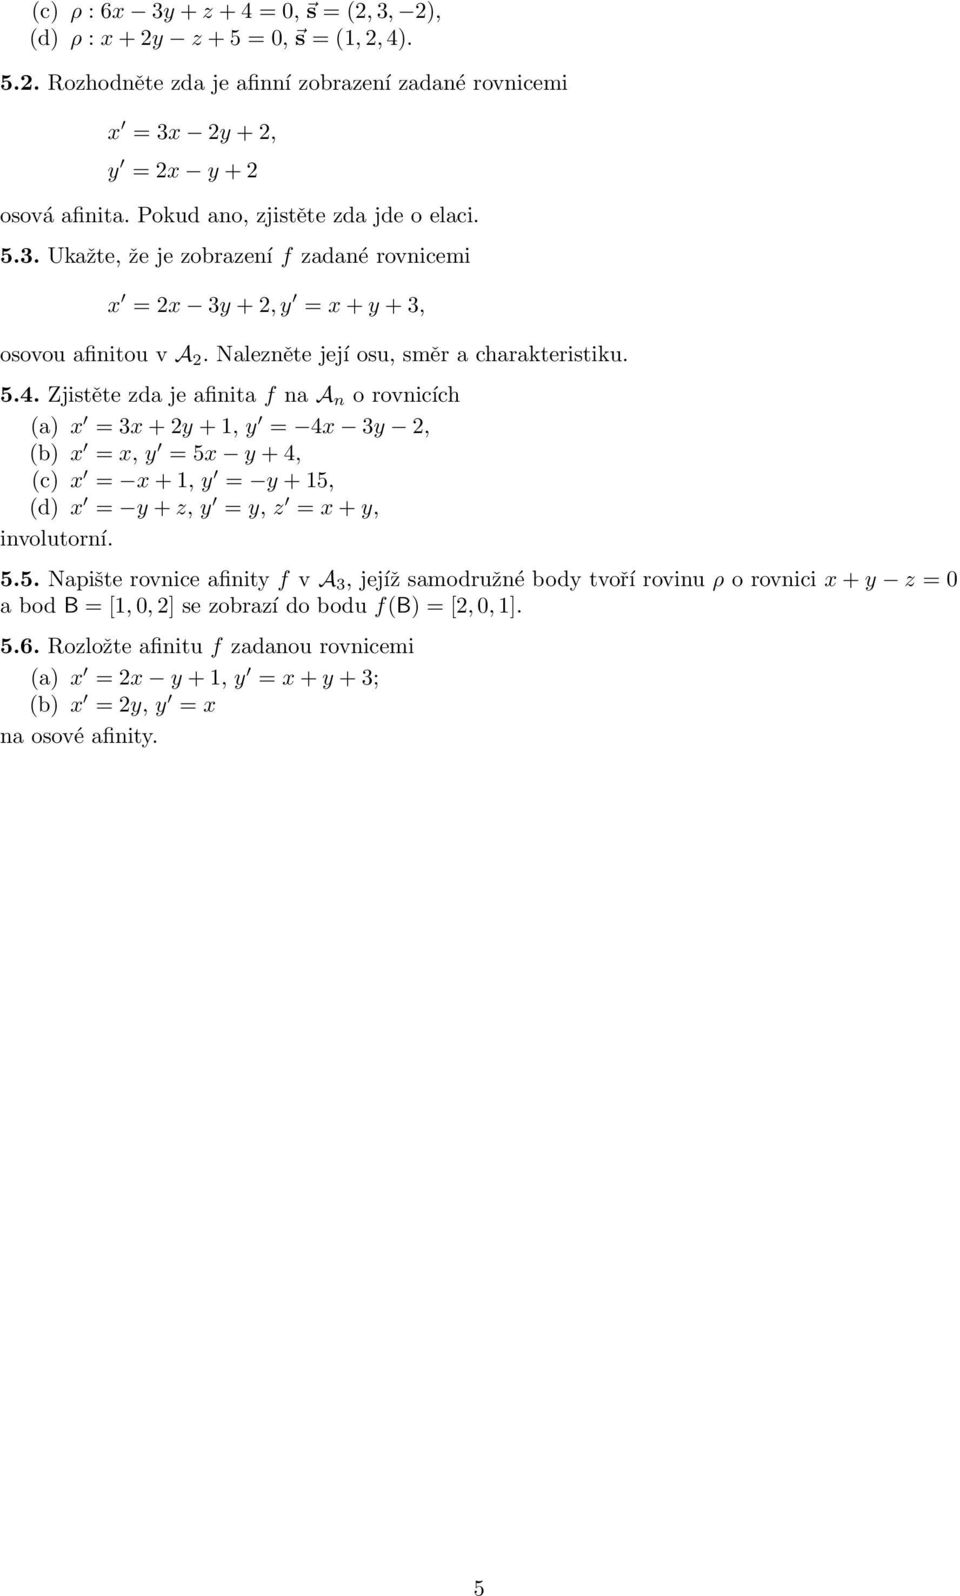 Zjistěte zda je afinita f na A n o rovnicích (a) x =3x +2y +1,y = 4x 3y 2, (b) x = x, y =5x